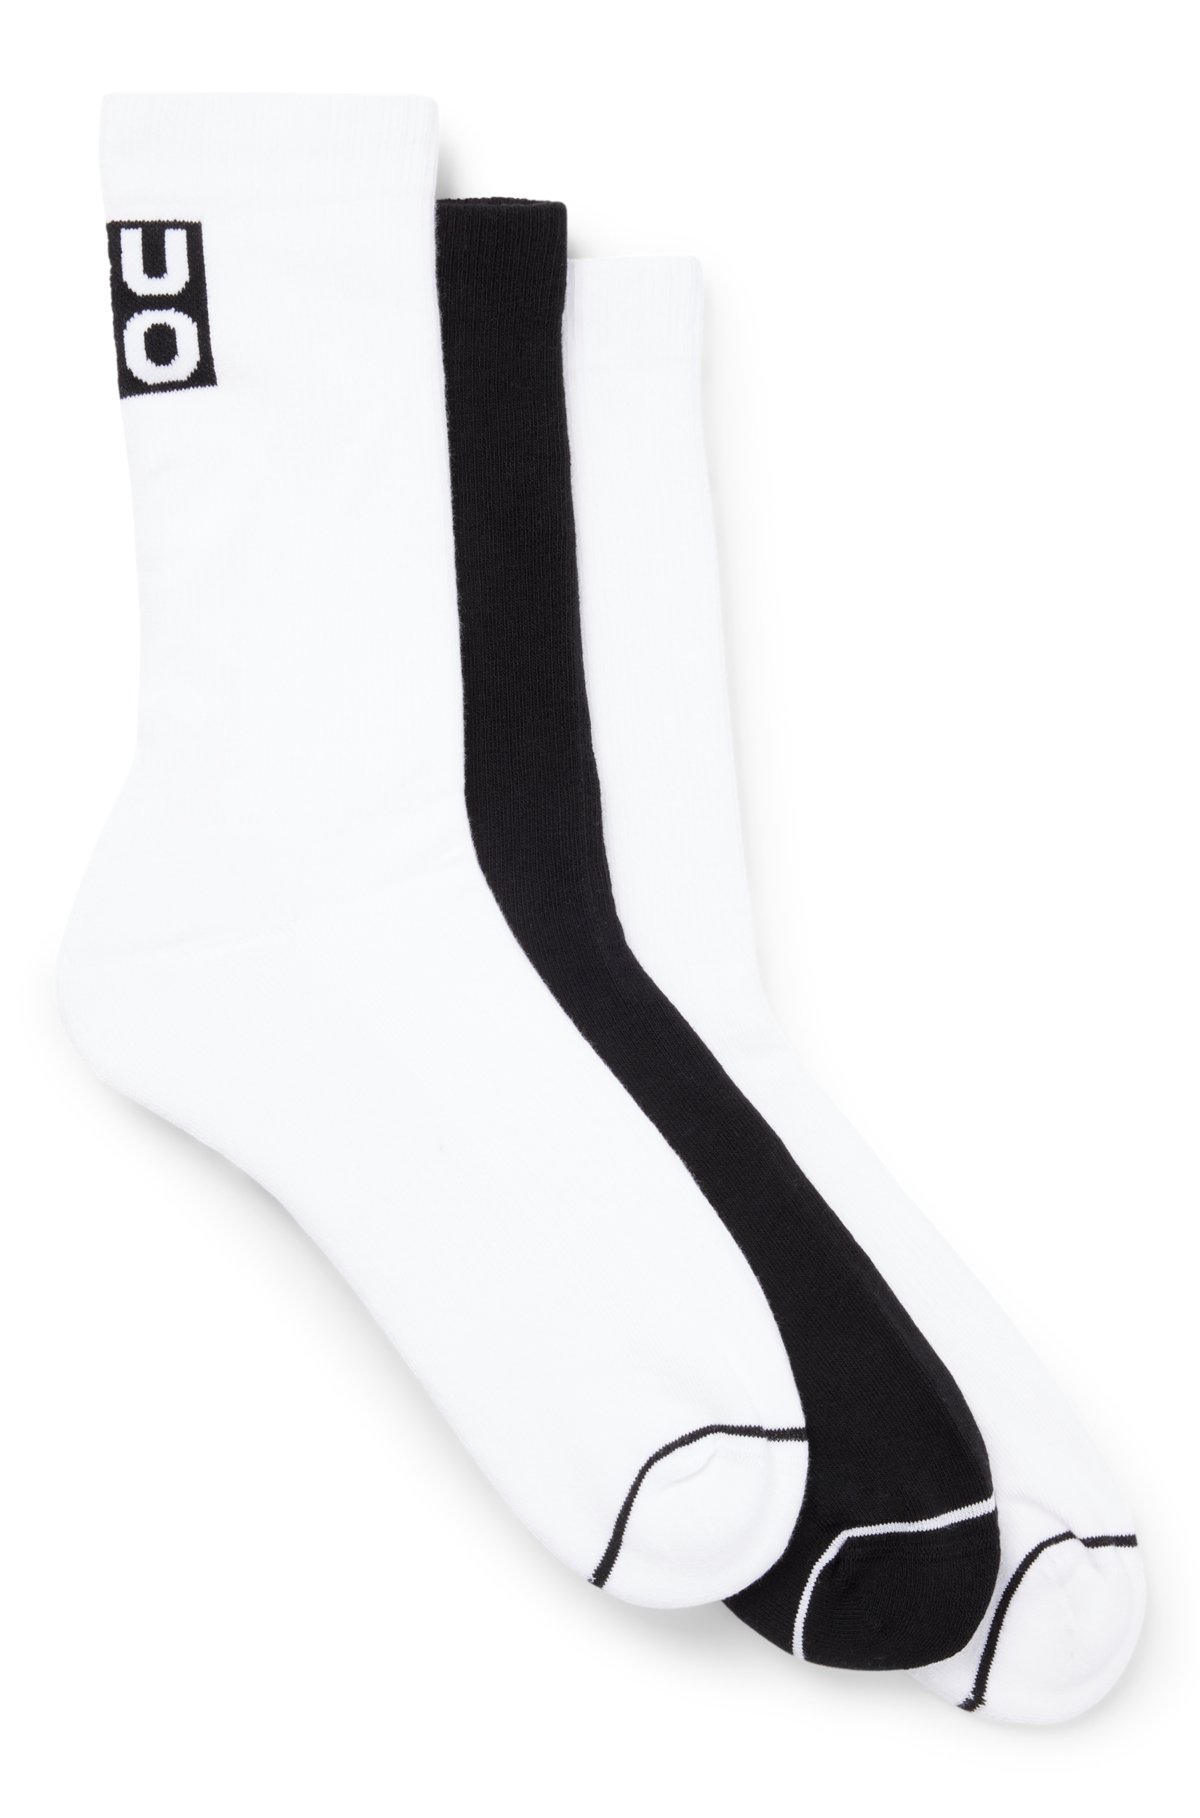 Chaussettes de sport Nike - Taille 39-42 - Unisexe - noir / blanc